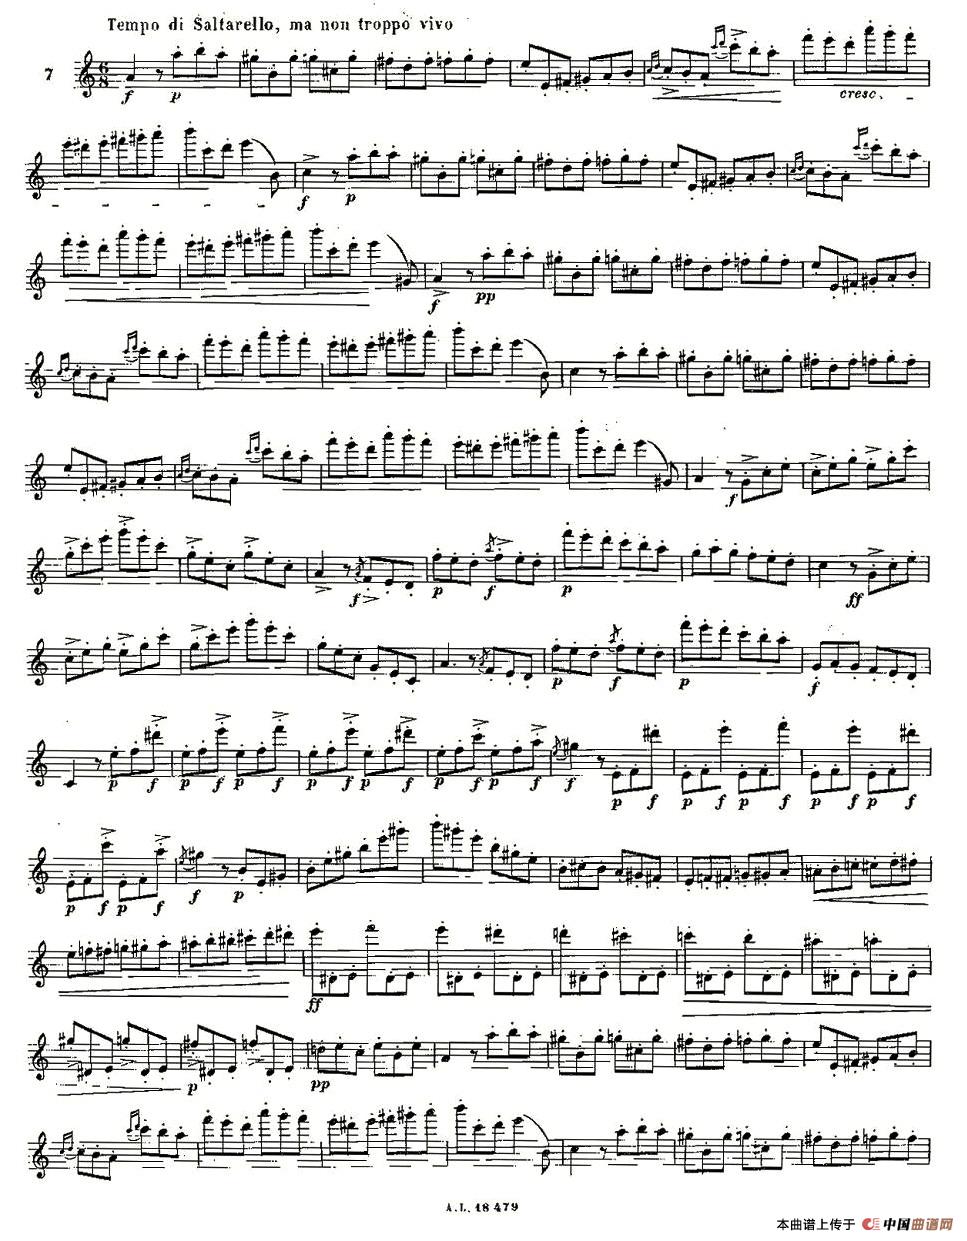 基于维尼亚夫斯基练习曲的10首长笛练习曲之7（